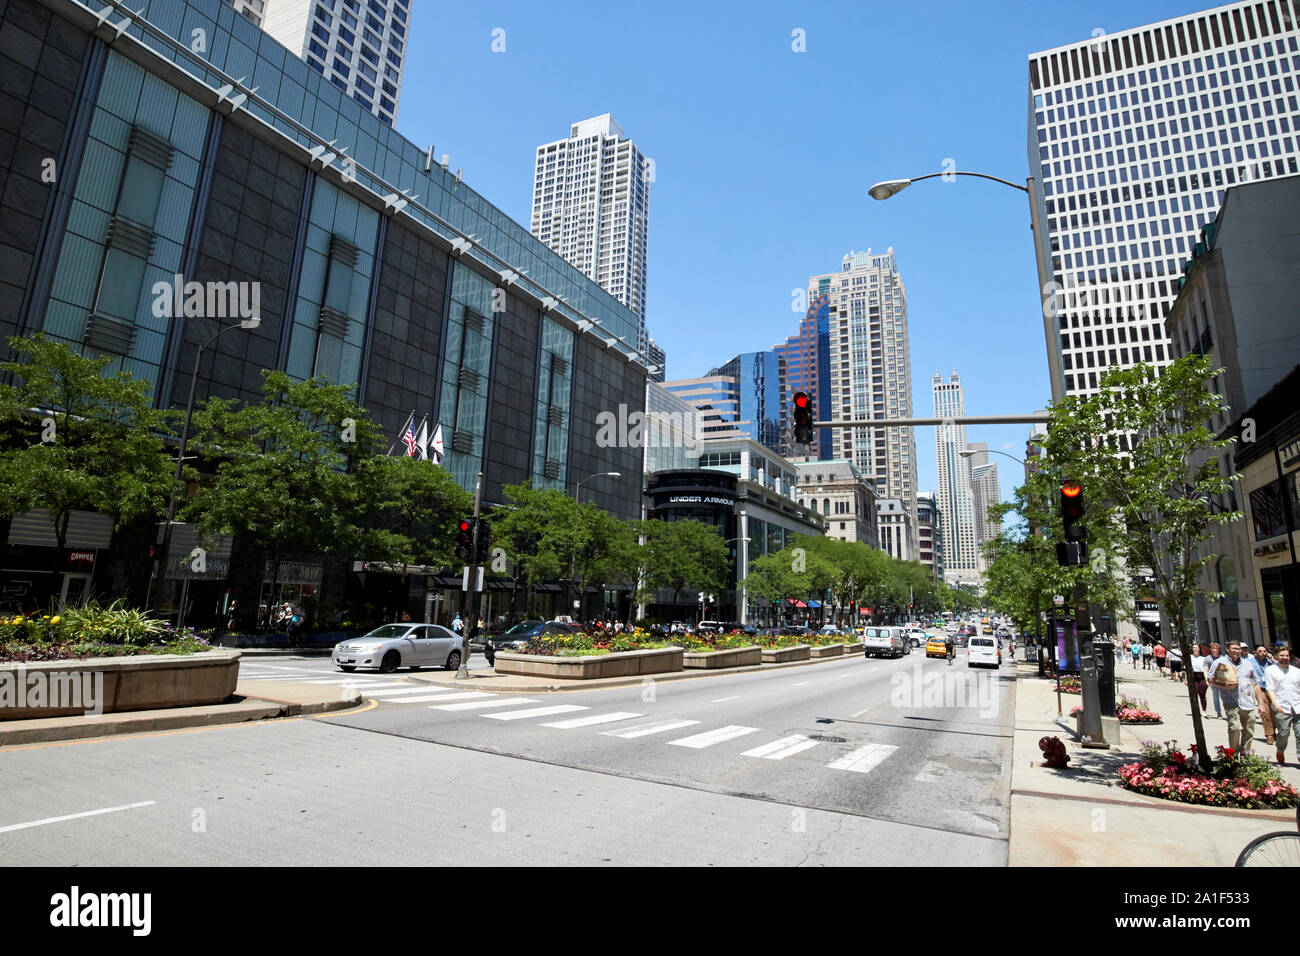 North Michigan Avenue Einkaufsviertel Magnificent Mile von Chicago usa Illinois Stockfoto